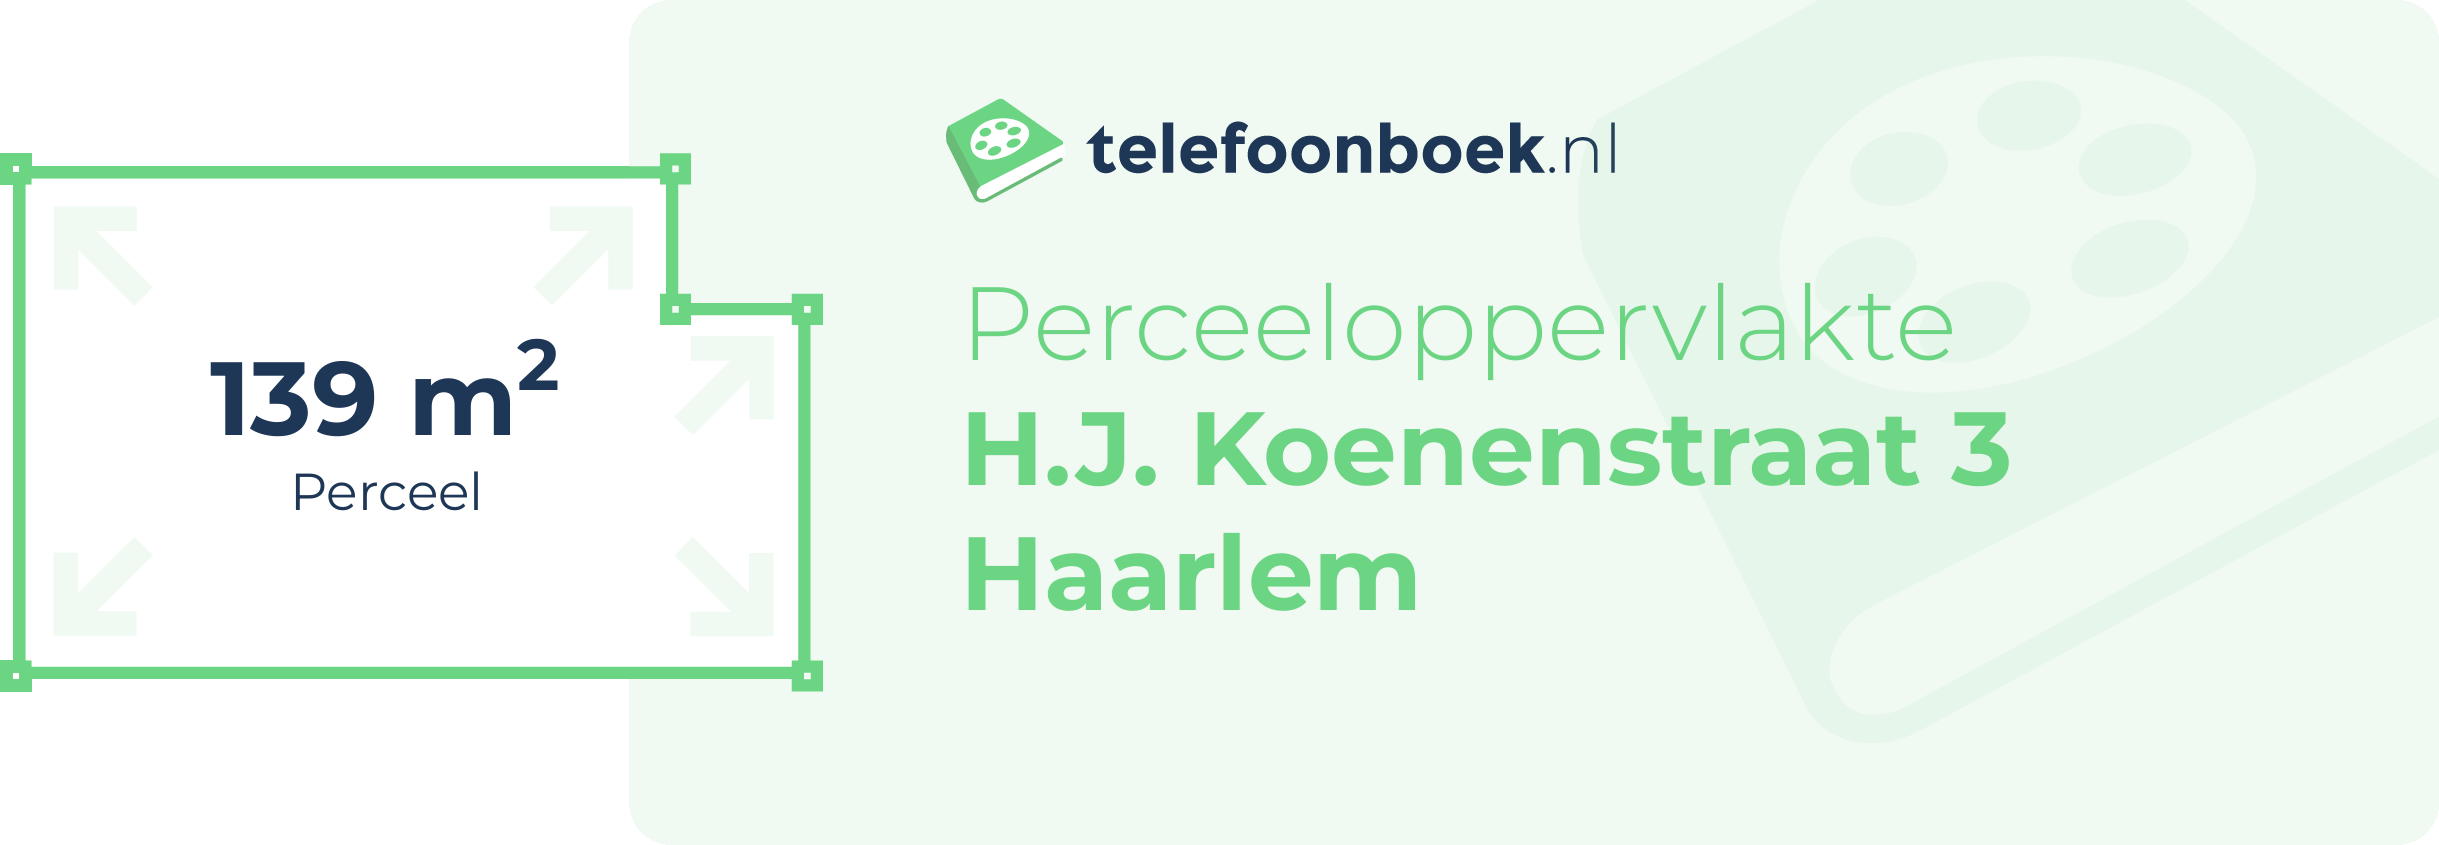 Perceeloppervlakte H.J. Koenenstraat 3 Haarlem